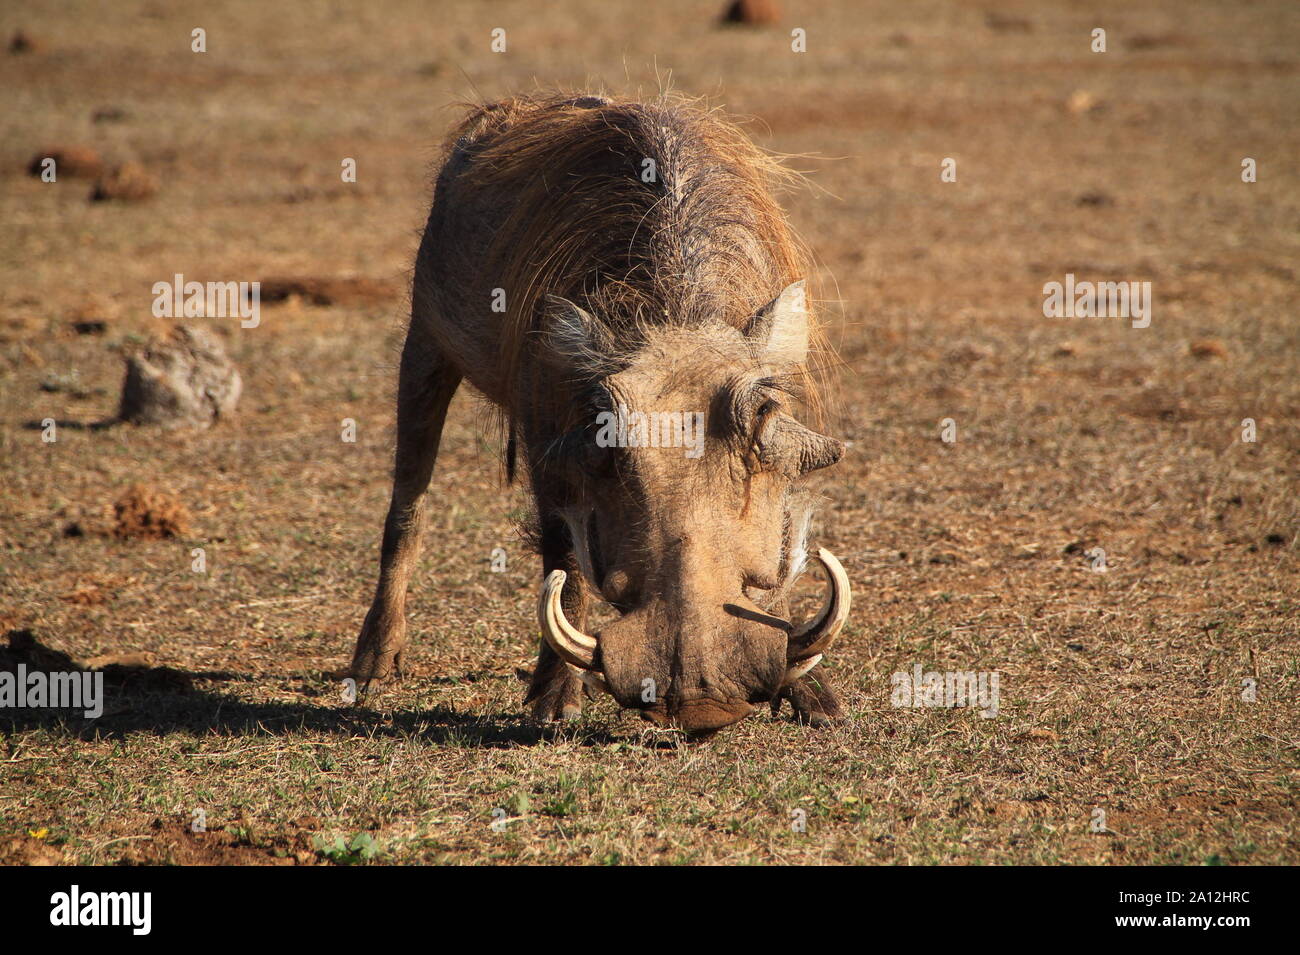 Südafrikanisches Warthog in Angriffsstellung Stock Photo